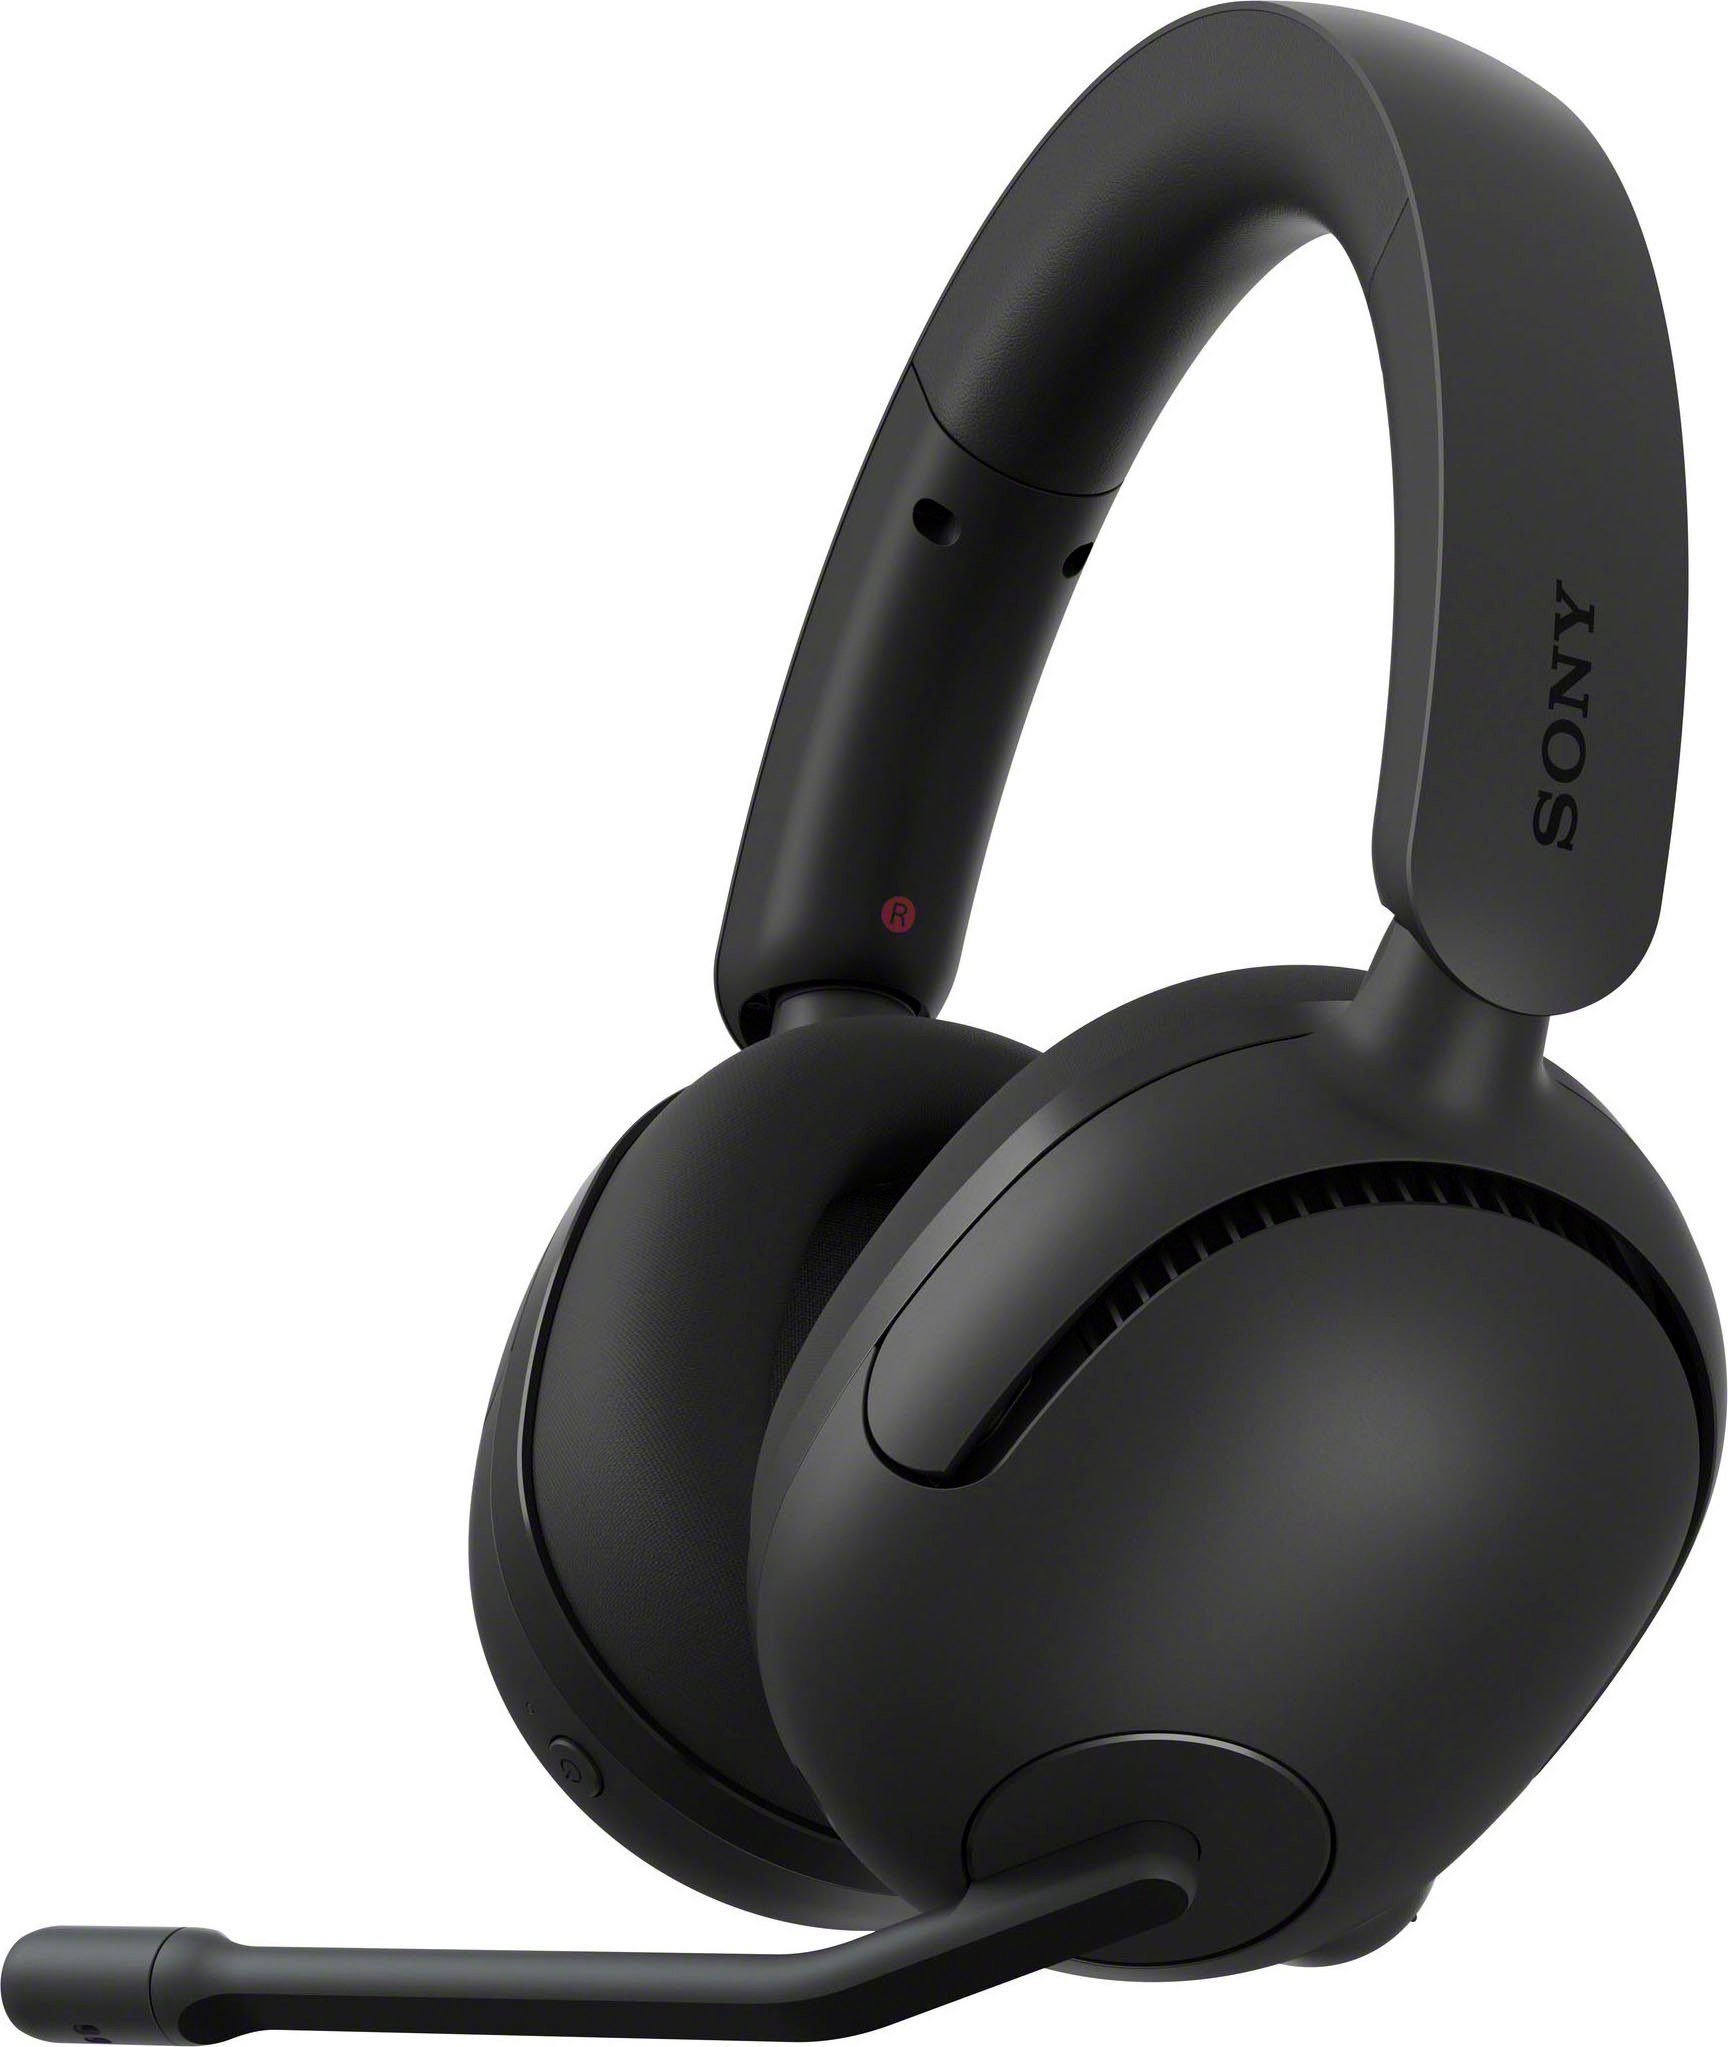 Sony INZONE H5 geringe Bluetooth, Akkulaufzeit, 28Std mit SpatialSound, AI) Gaming-Headset schwarz 360 Latenz, Mic (Rauschunterdrückung